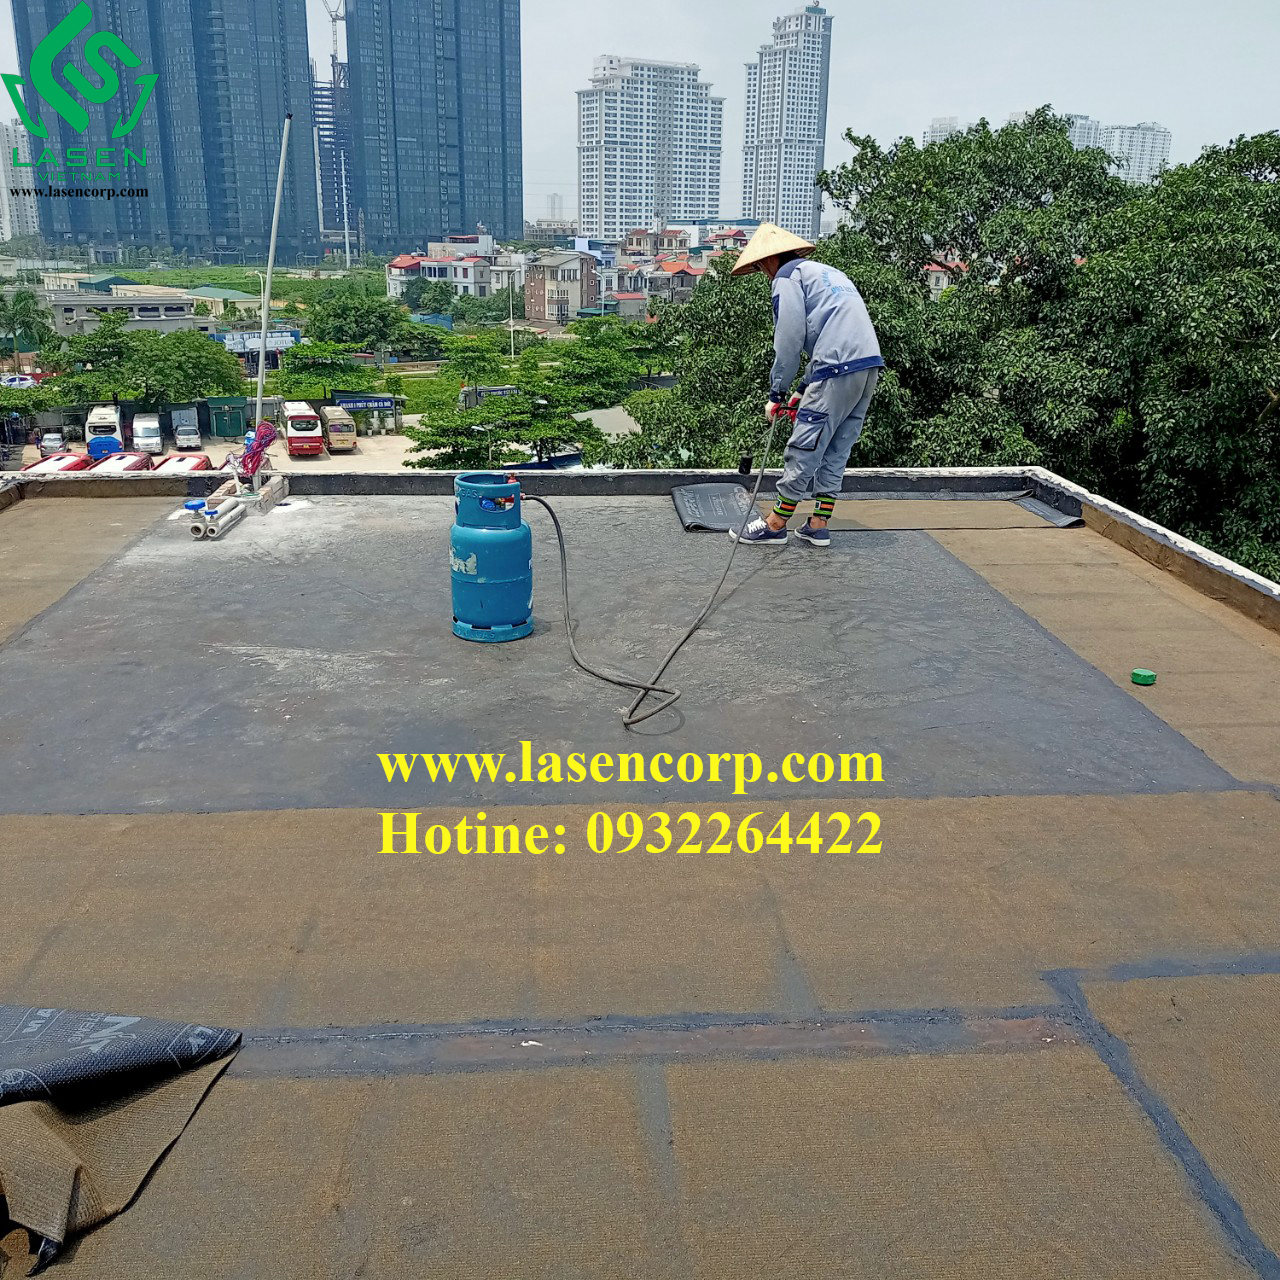 Những ưu điểm của dịch vụ chống thấm trần nhà Lasen